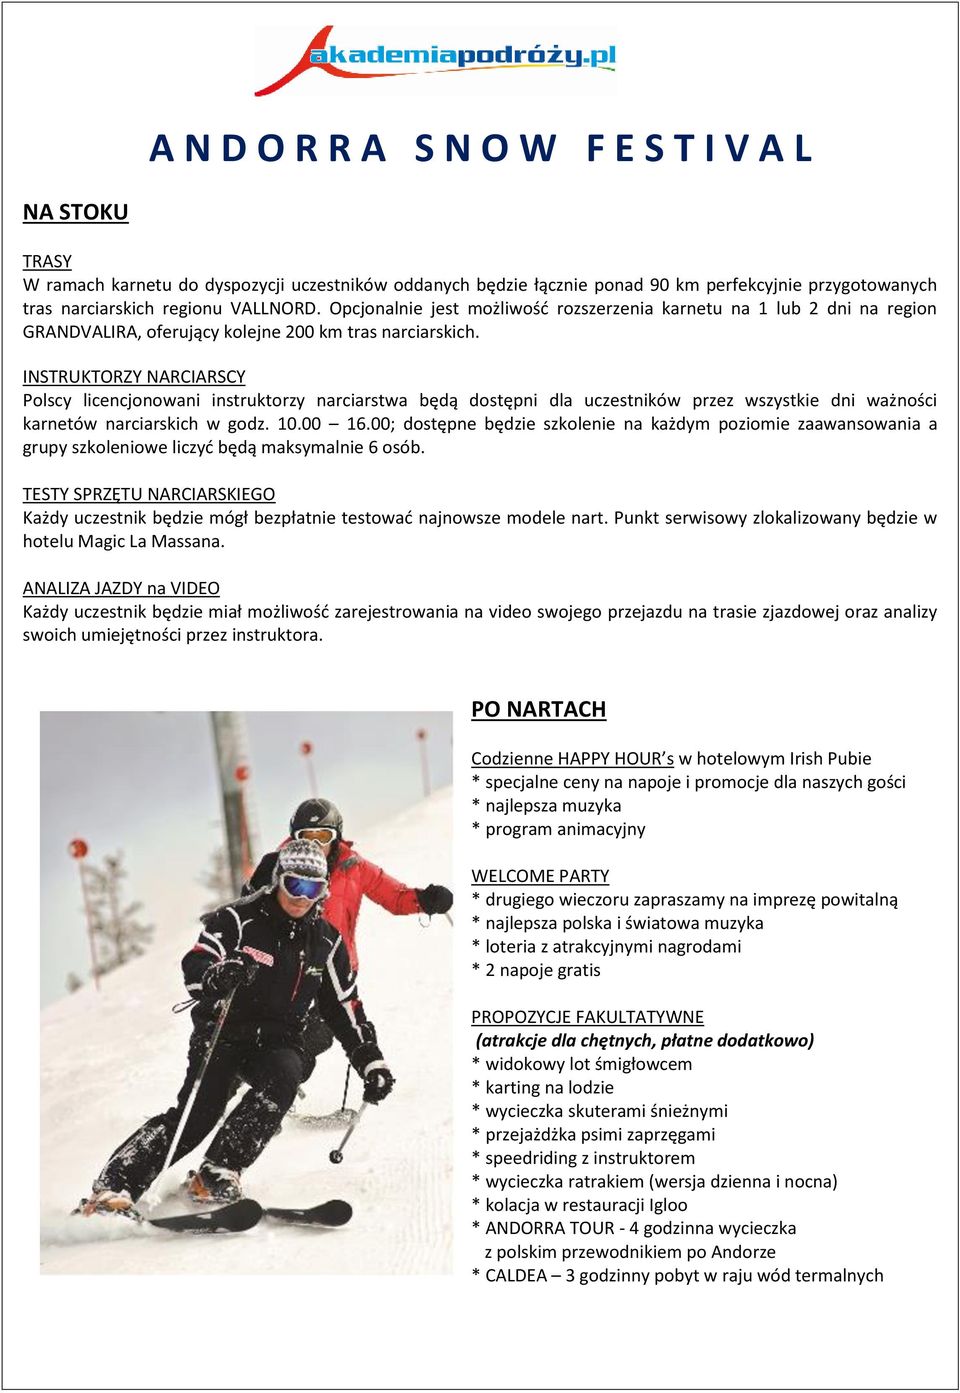 INSTRUKTORZY NARCIARSCY Polscy licencjonowani instruktorzy narciarstwa będą dostępni dla uczestników przez wszystkie dni ważności karnetów narciarskich w godz. 10.00 16.